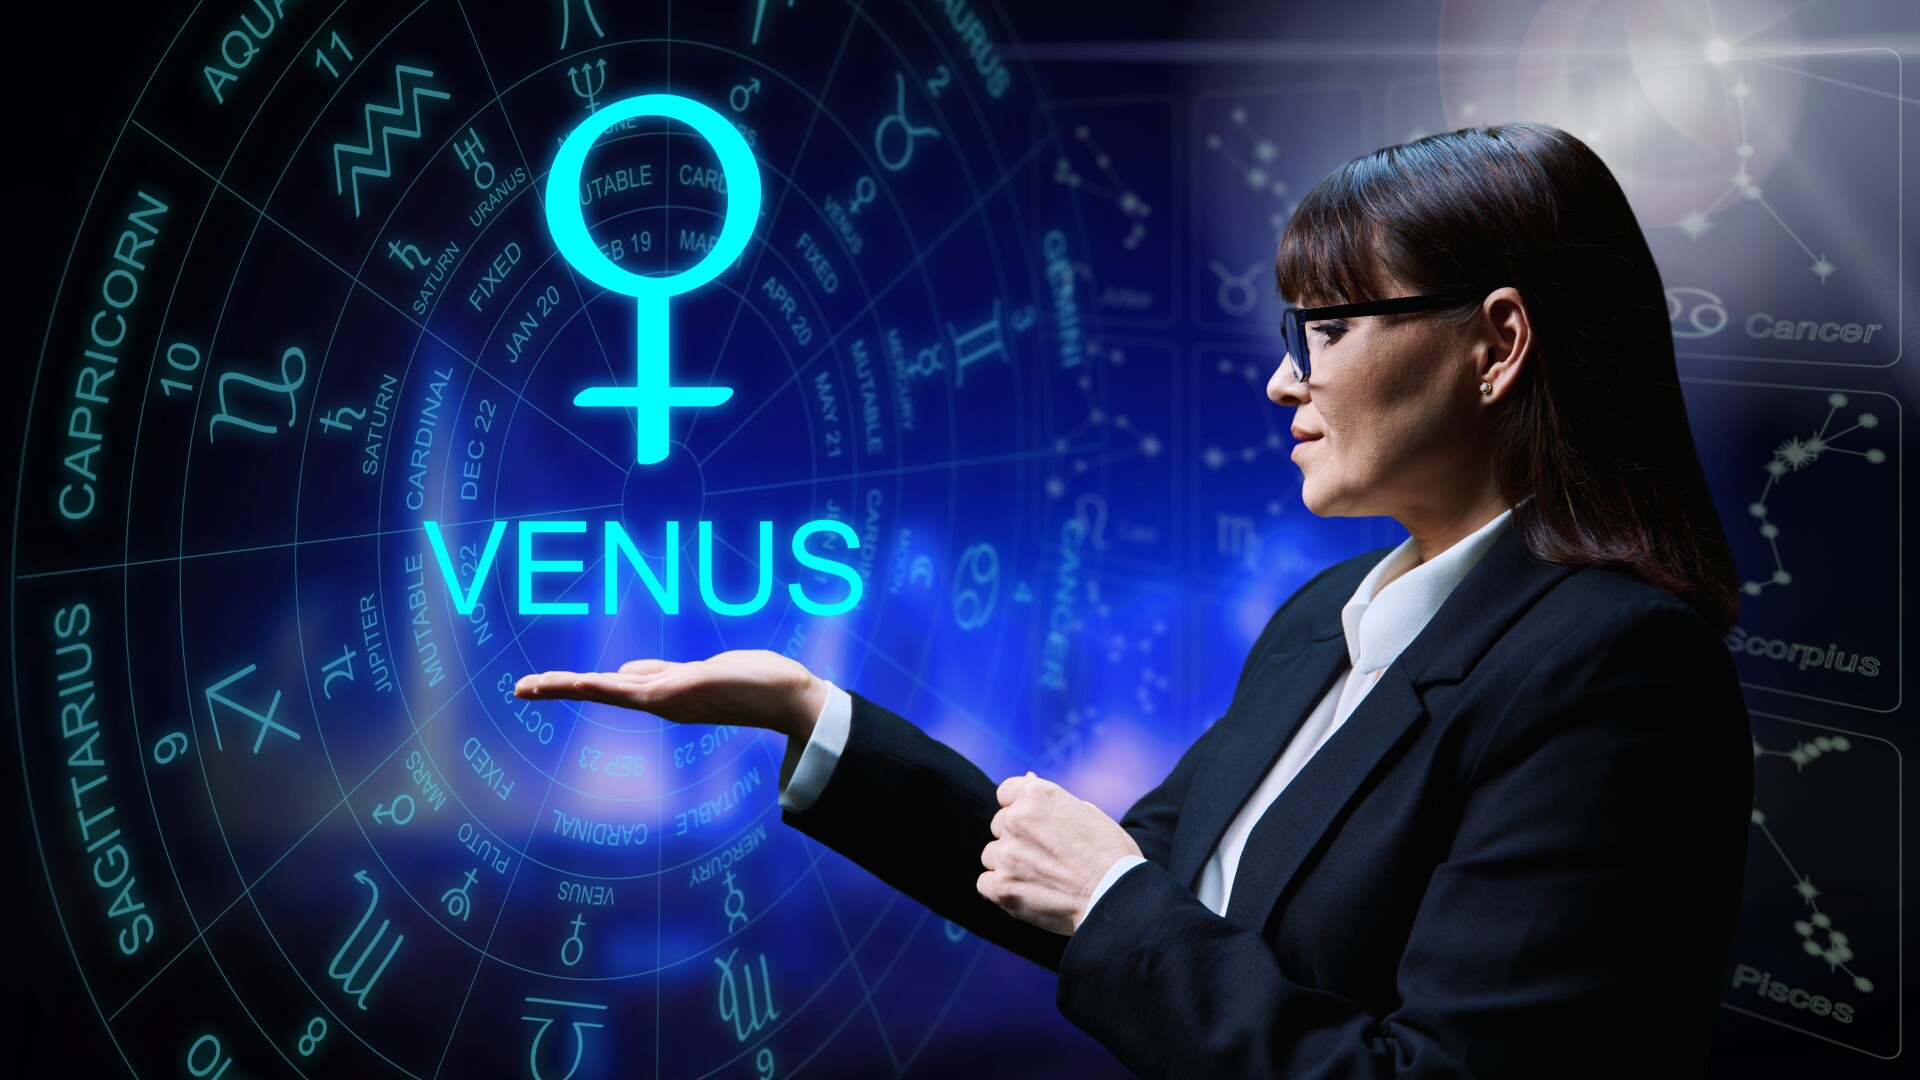 Venus in balanta